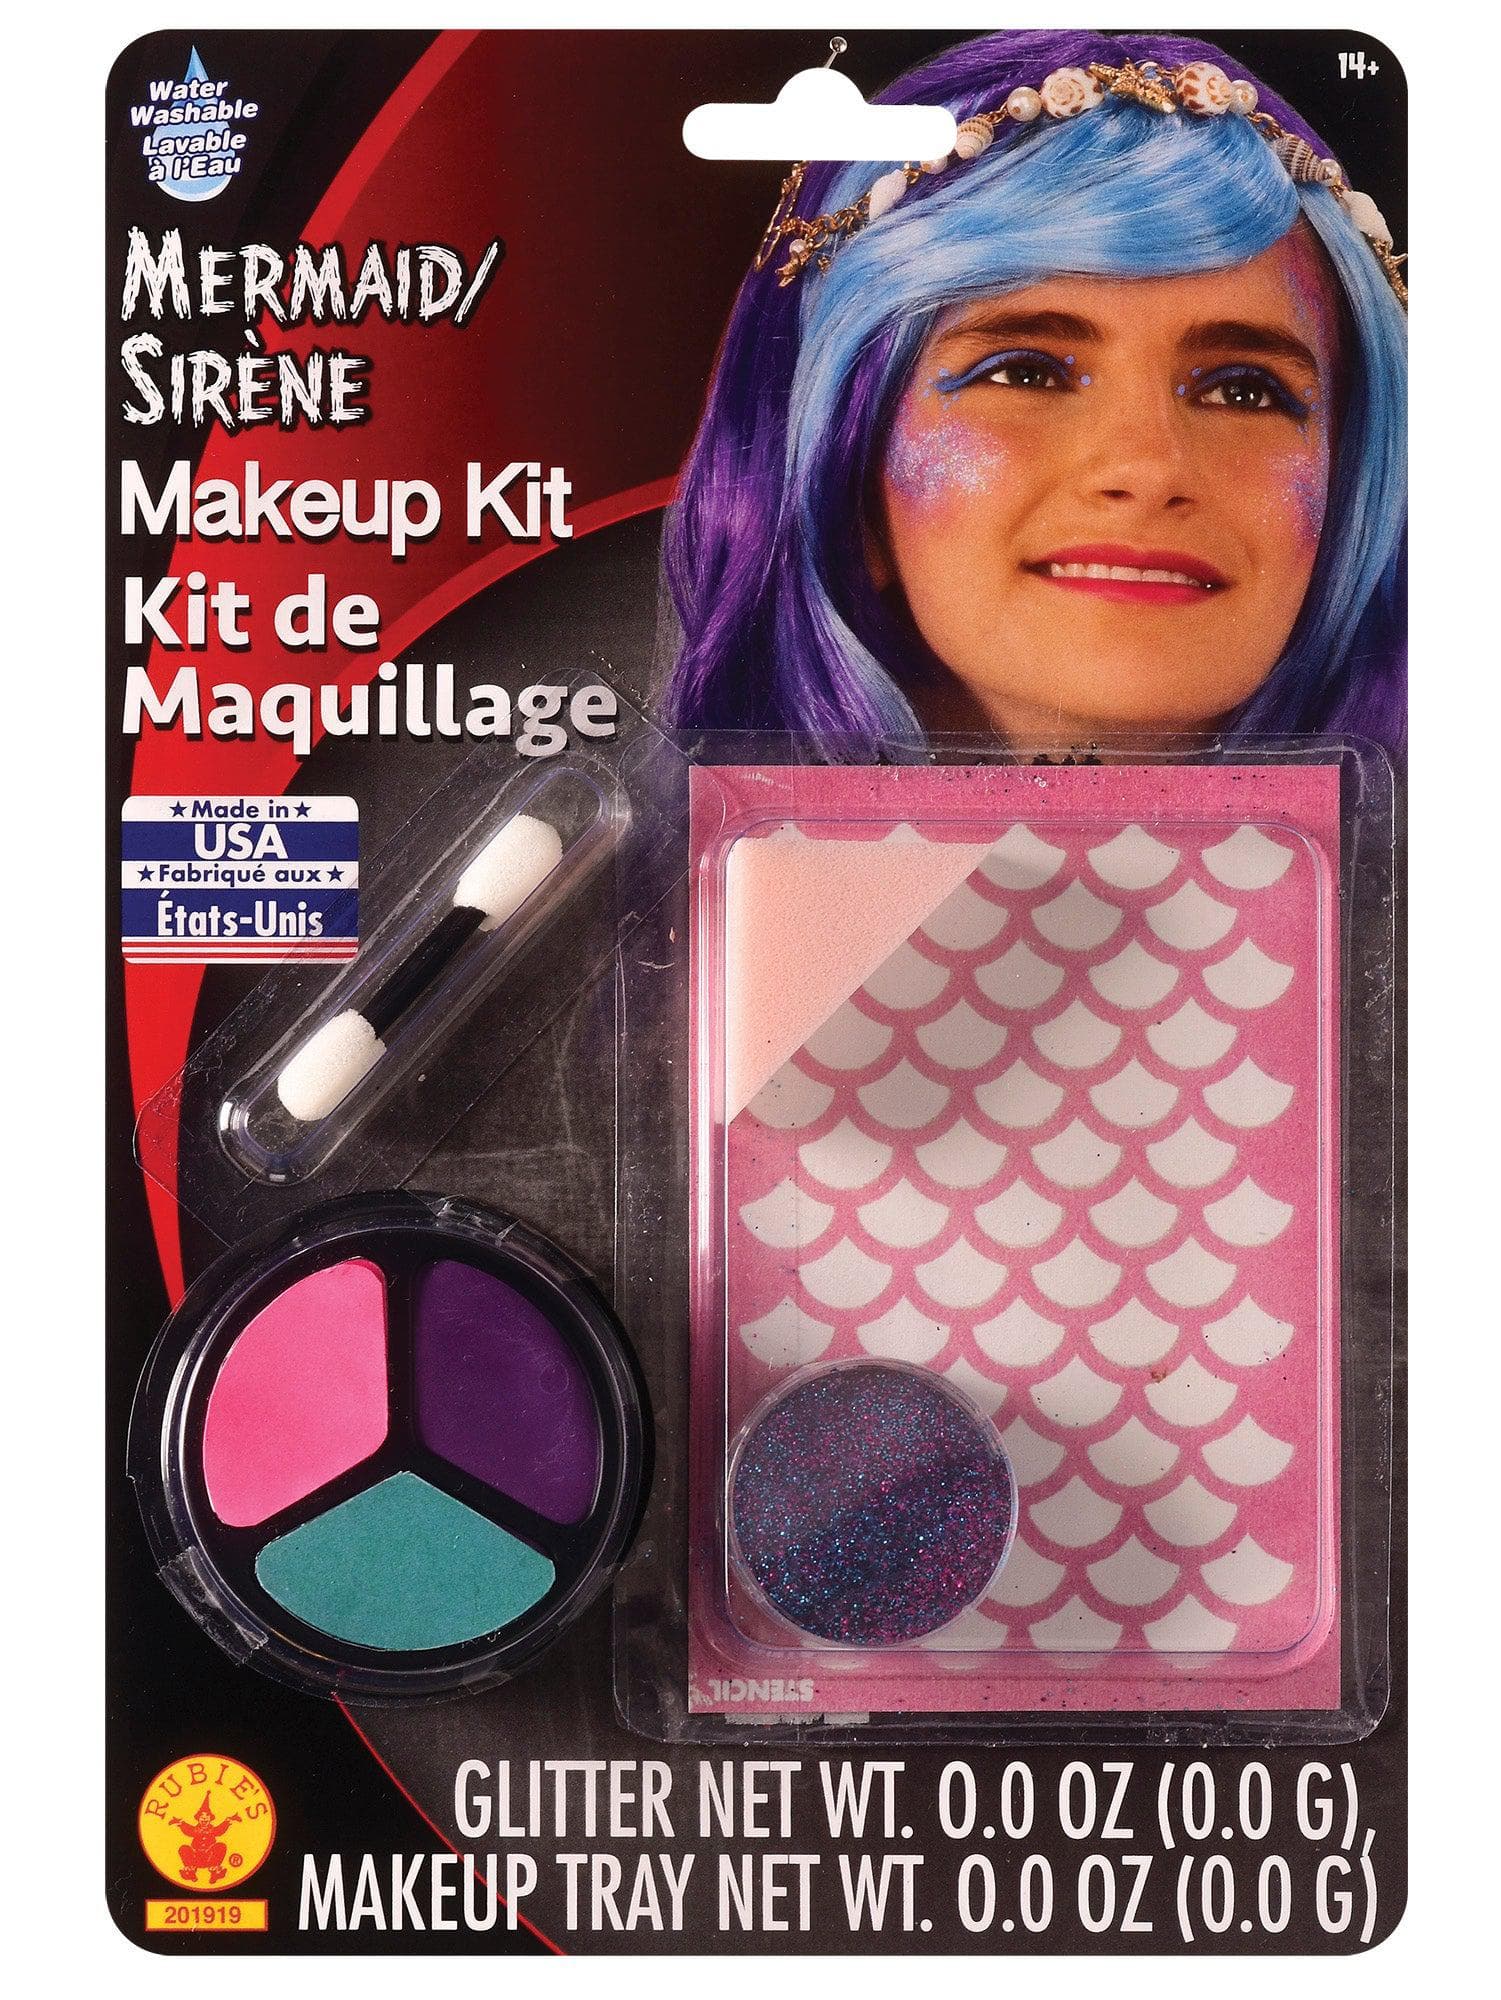 Mermaid Makeup Kit - costumes.com